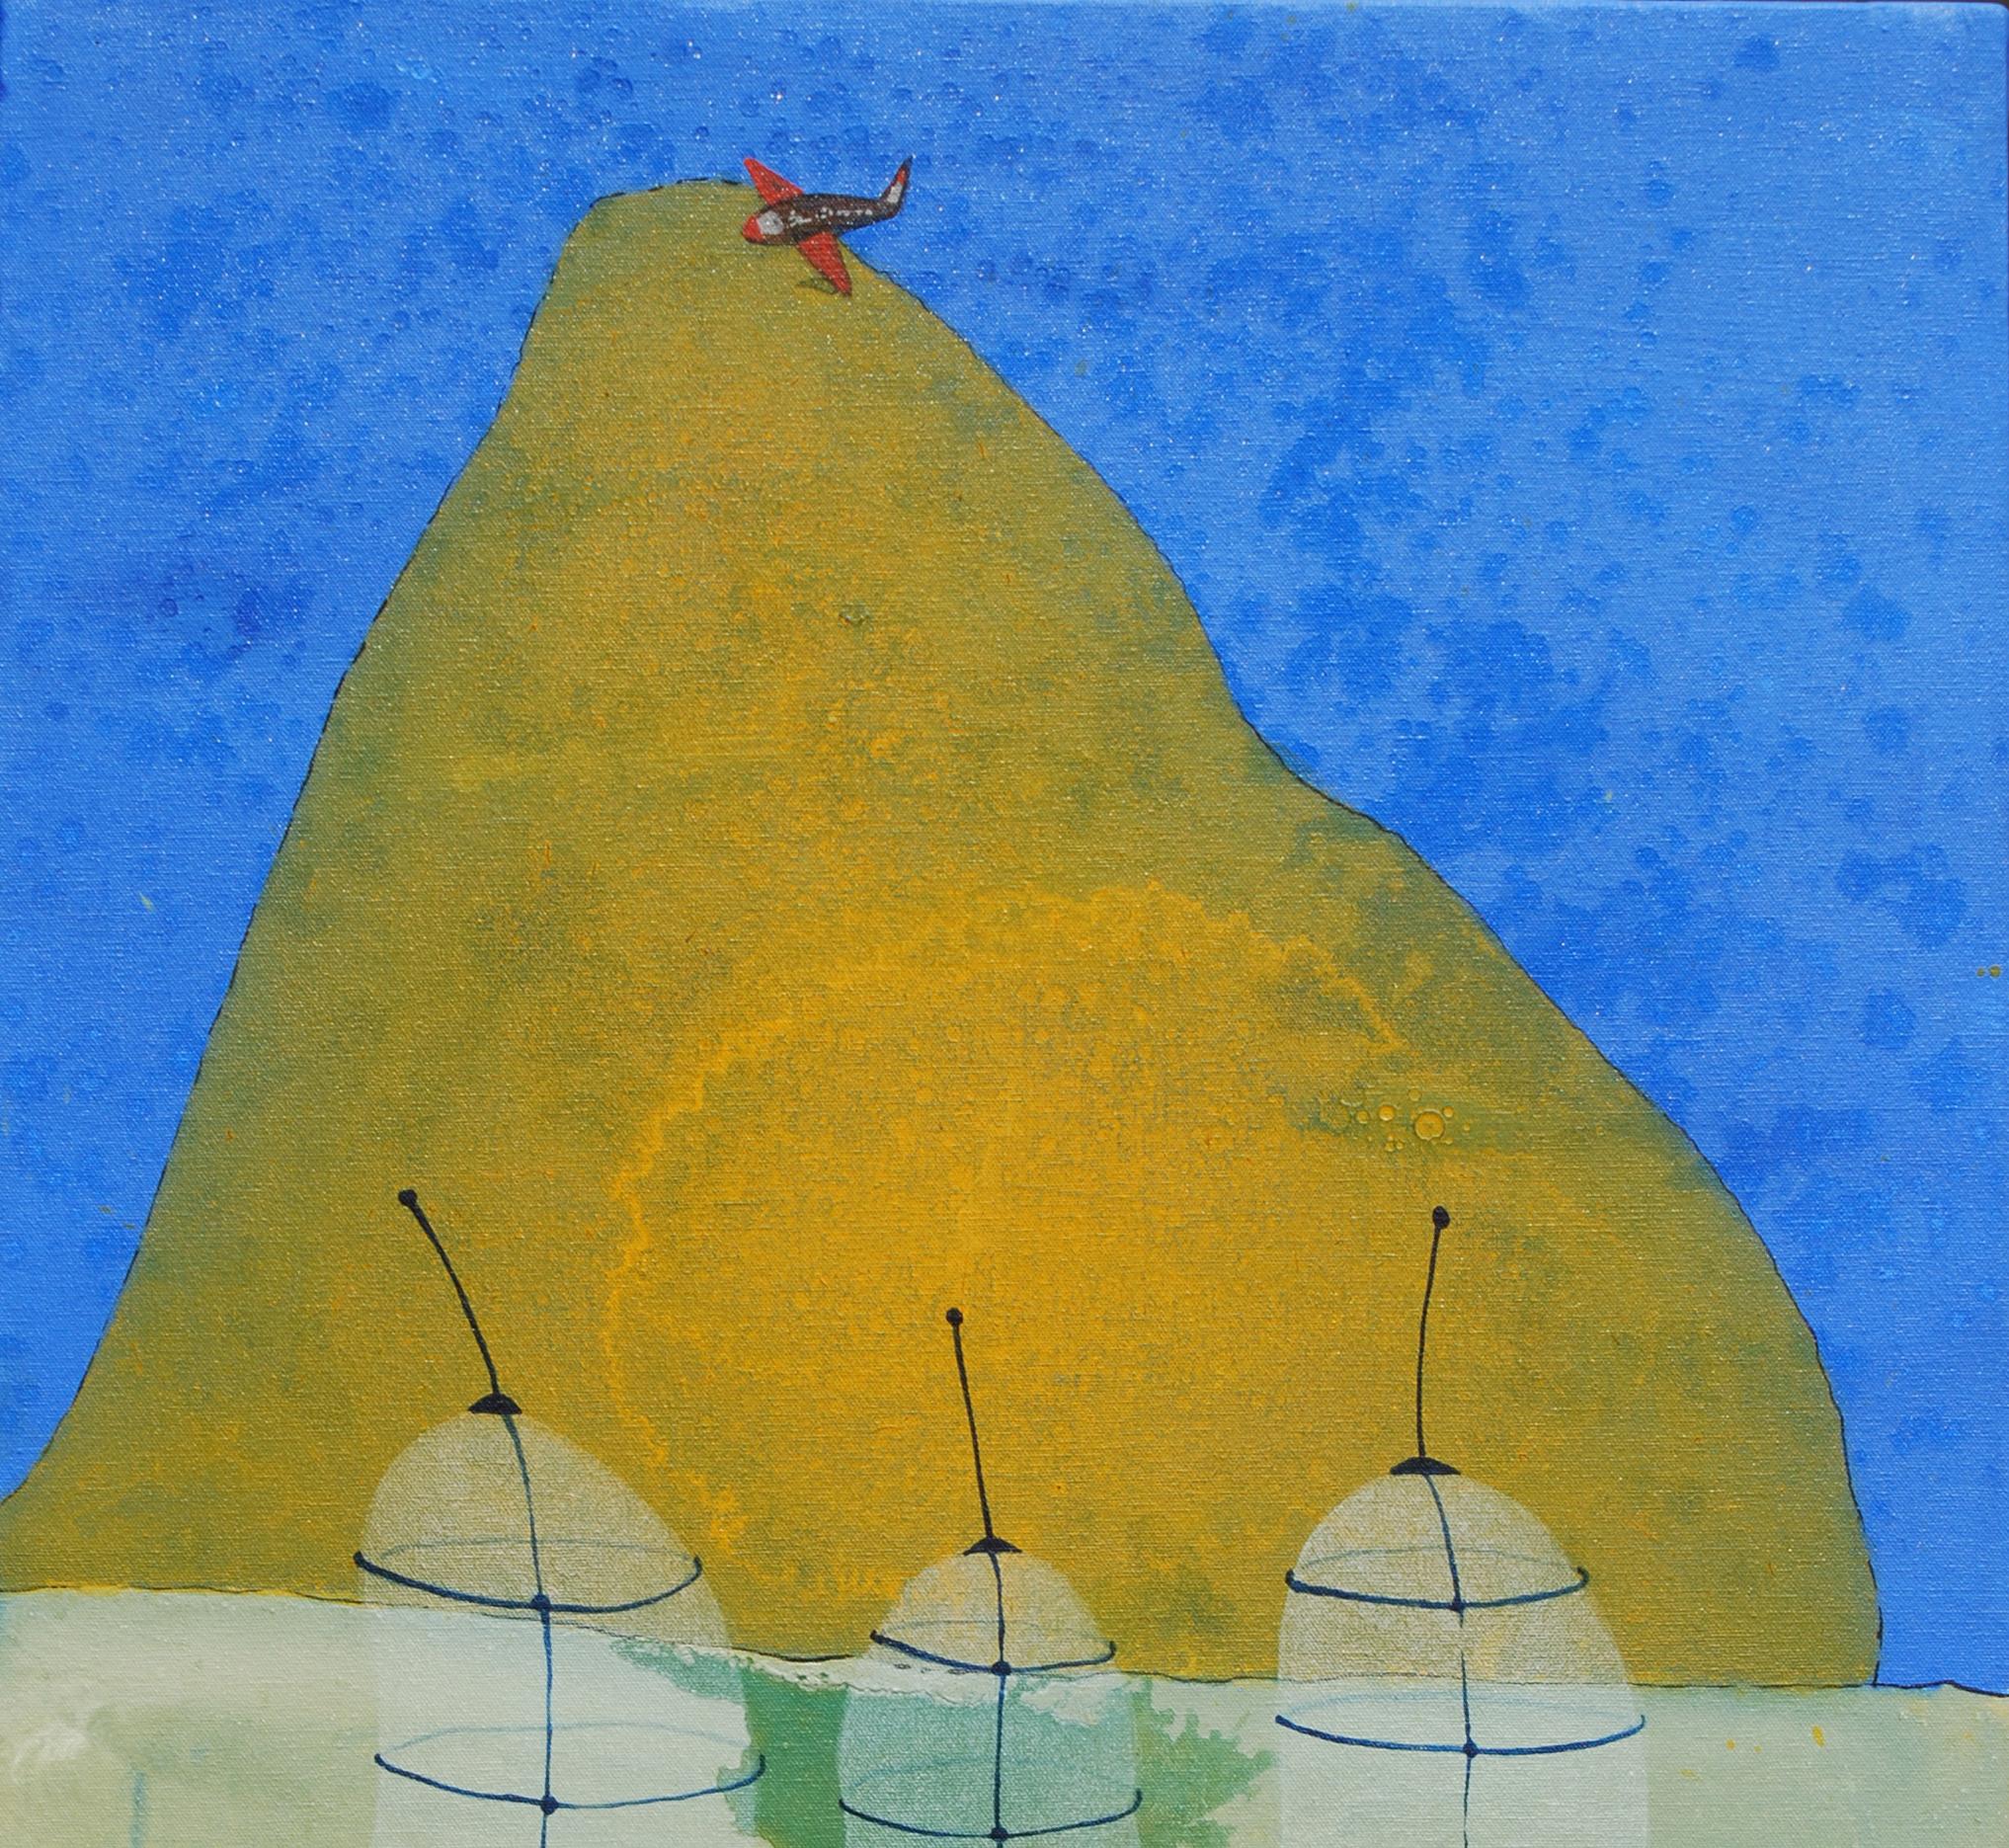 « Guerre ou paix », acrylique, technique mixte sur toile, couleurs bleue, jaune, rouge « en stock » - Moderne Mixed Media Art par Partha Prathim Deb